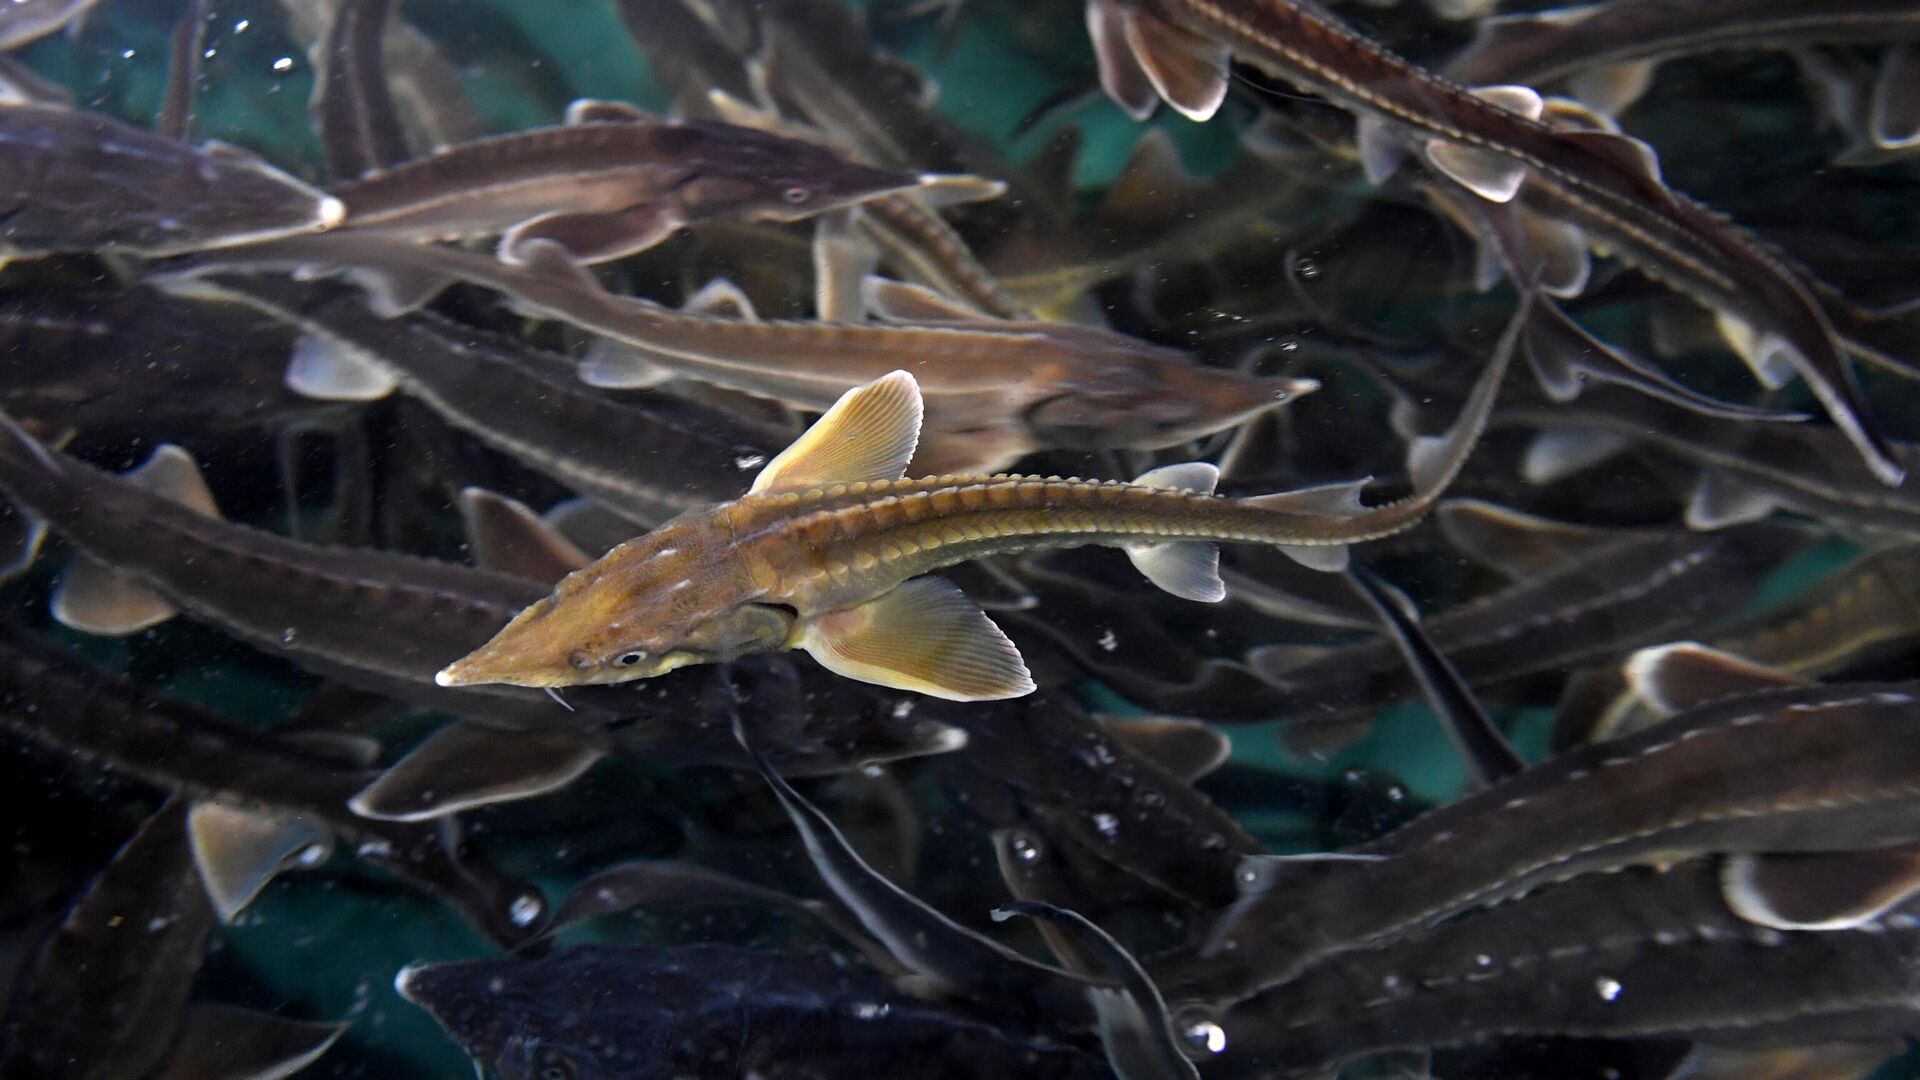 Ученые открыли неожиданный способ заморозки спермы рыб